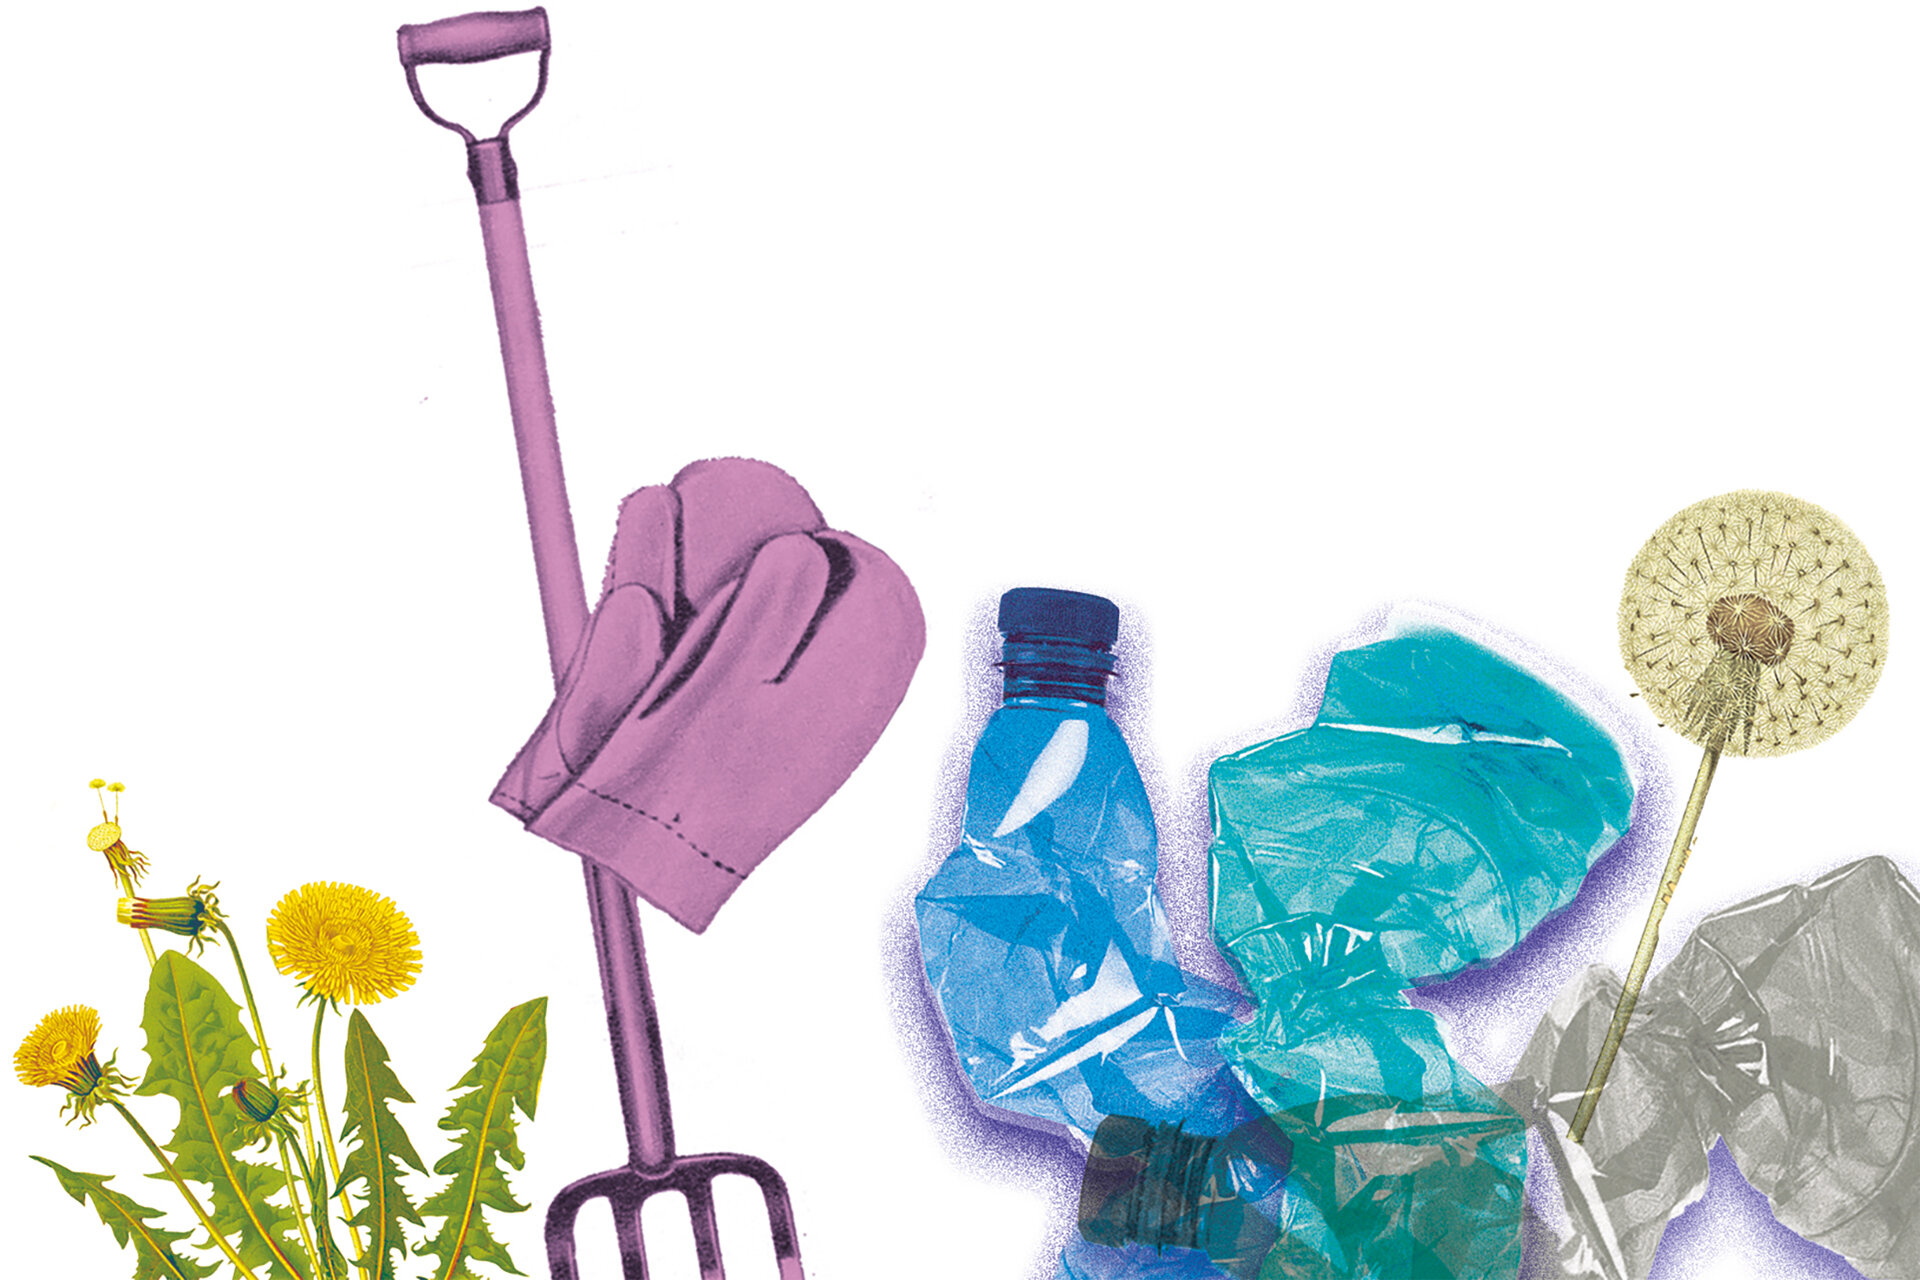 Bildercollage aus Gartenhandschuhen, Spatengabel, Löwenzahn und zerdrückten Plastikflaschen